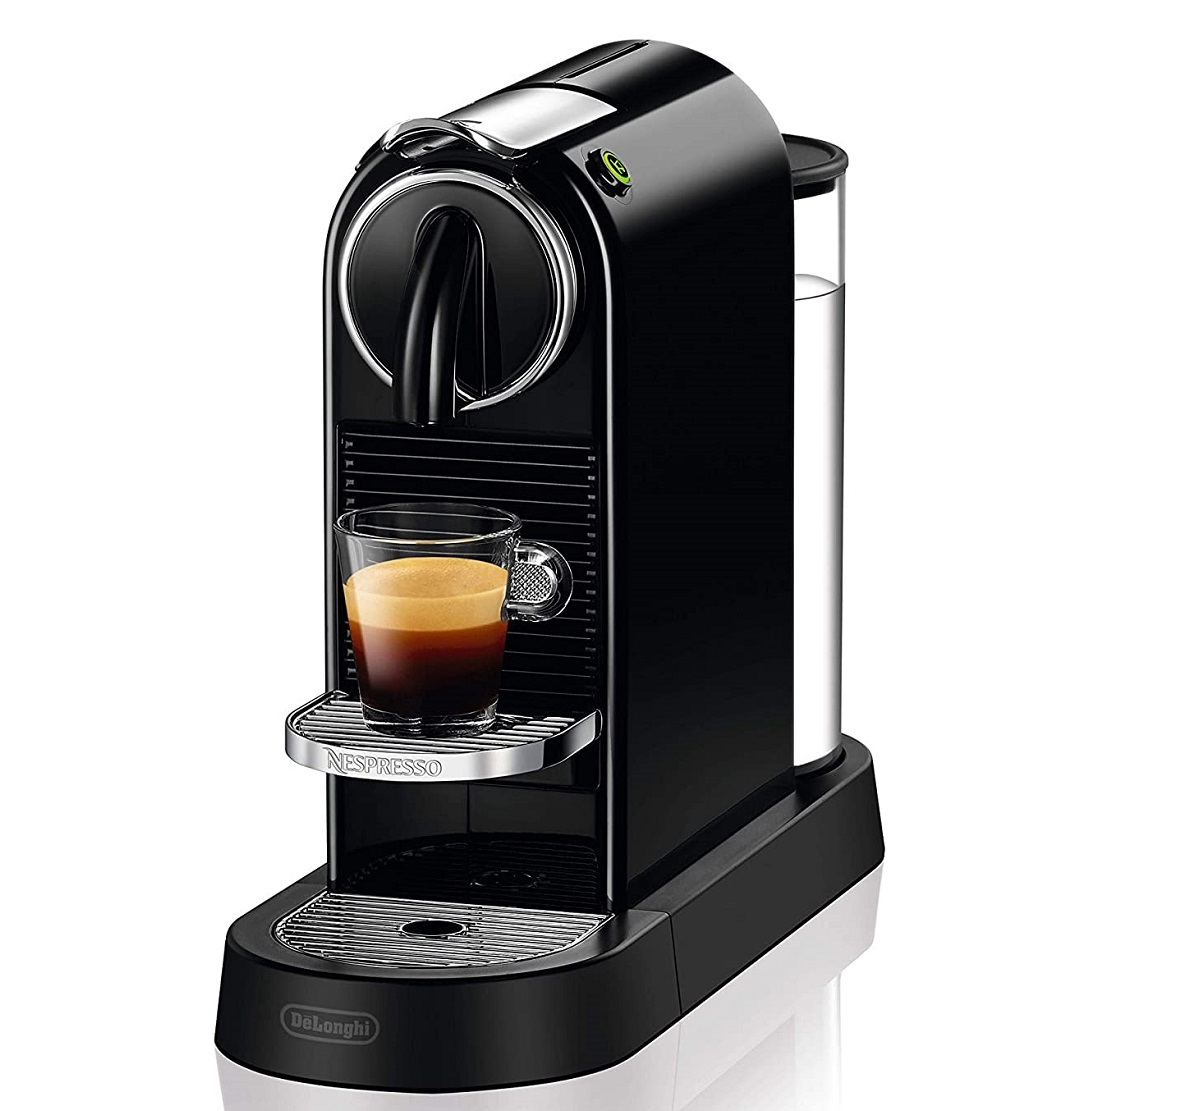 Lavazza Jolie vs De’Longhi Nespresso: Which Is The Best Pod Coffee Machine?